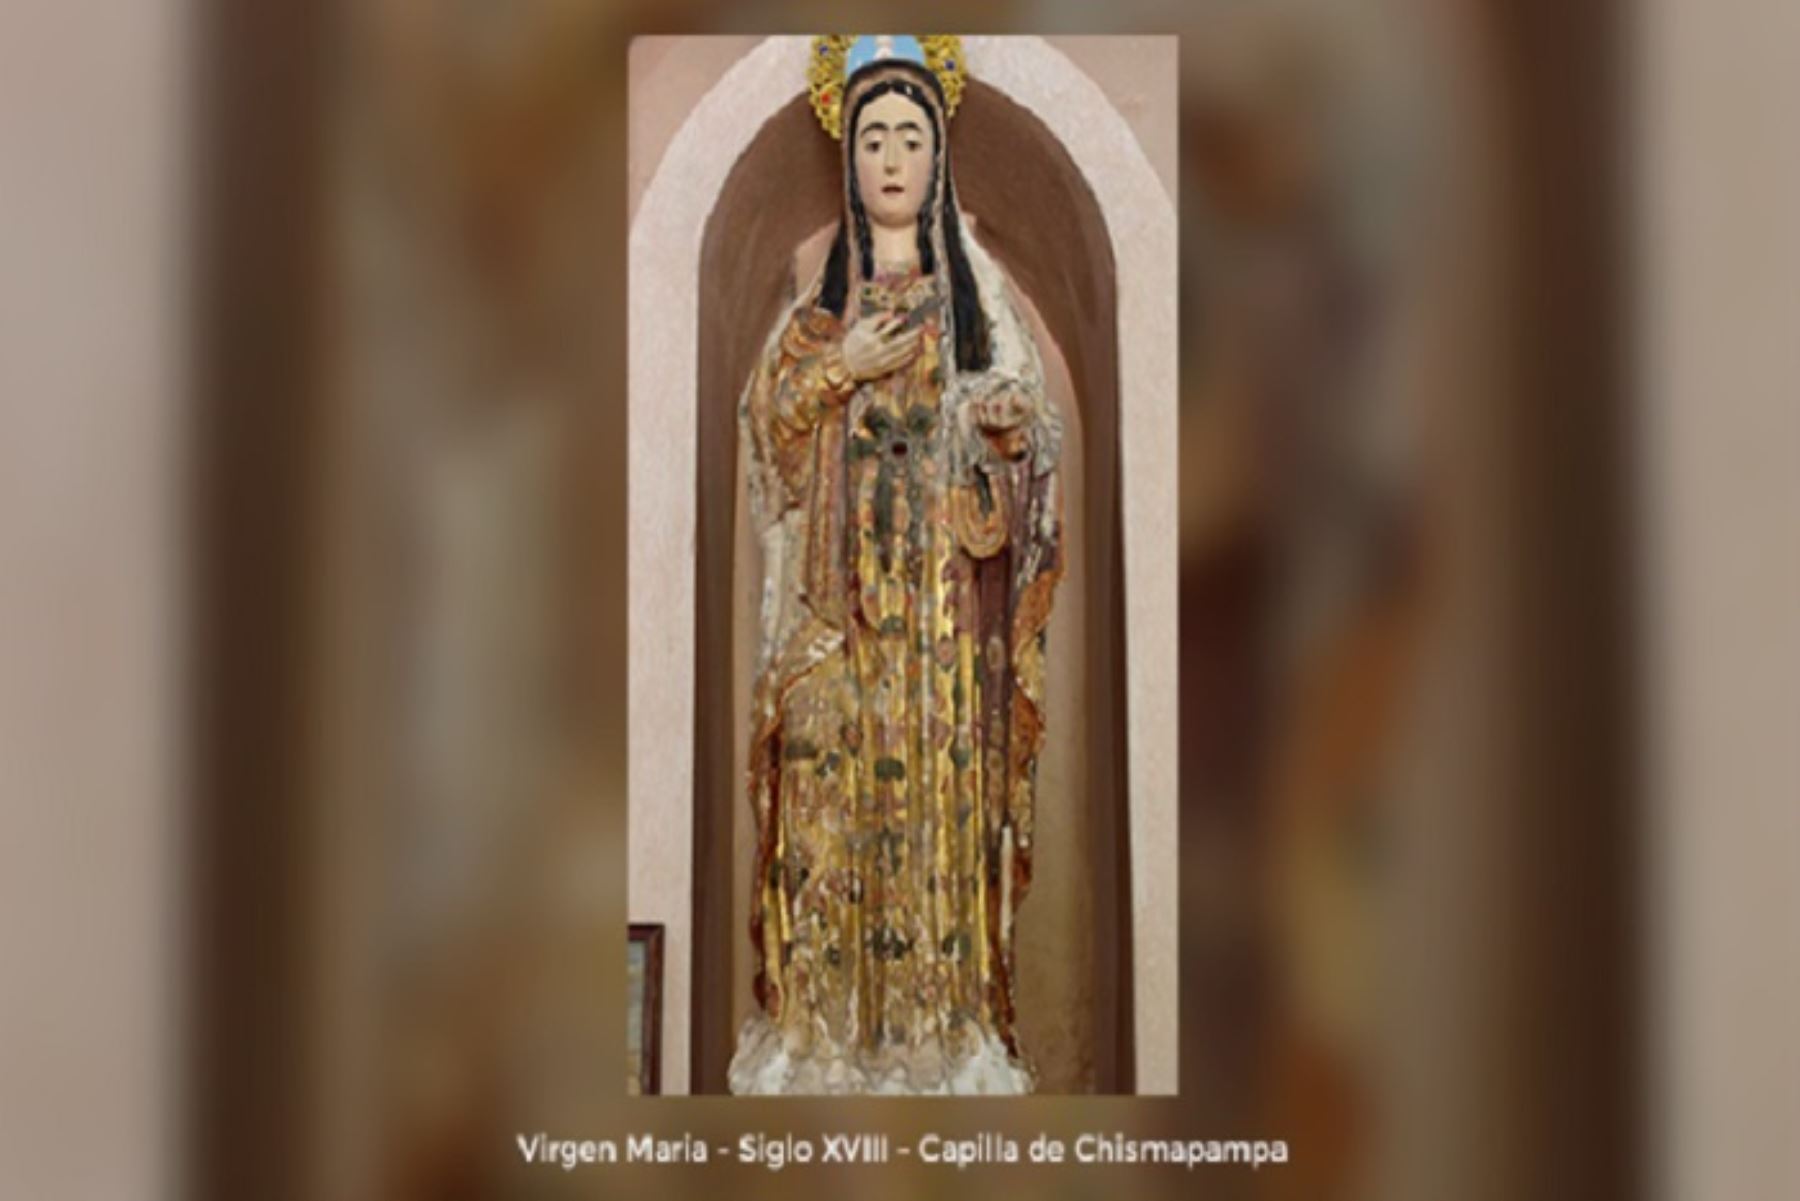 Destaca la imagen del Señor Justo Juez de Illanya, el Cristo de la Caída de Abancay, la Virgen María de Chismapampa y el altar mayor de Colcabamba, entre los principales bienes que serán protegidos por el Estado.